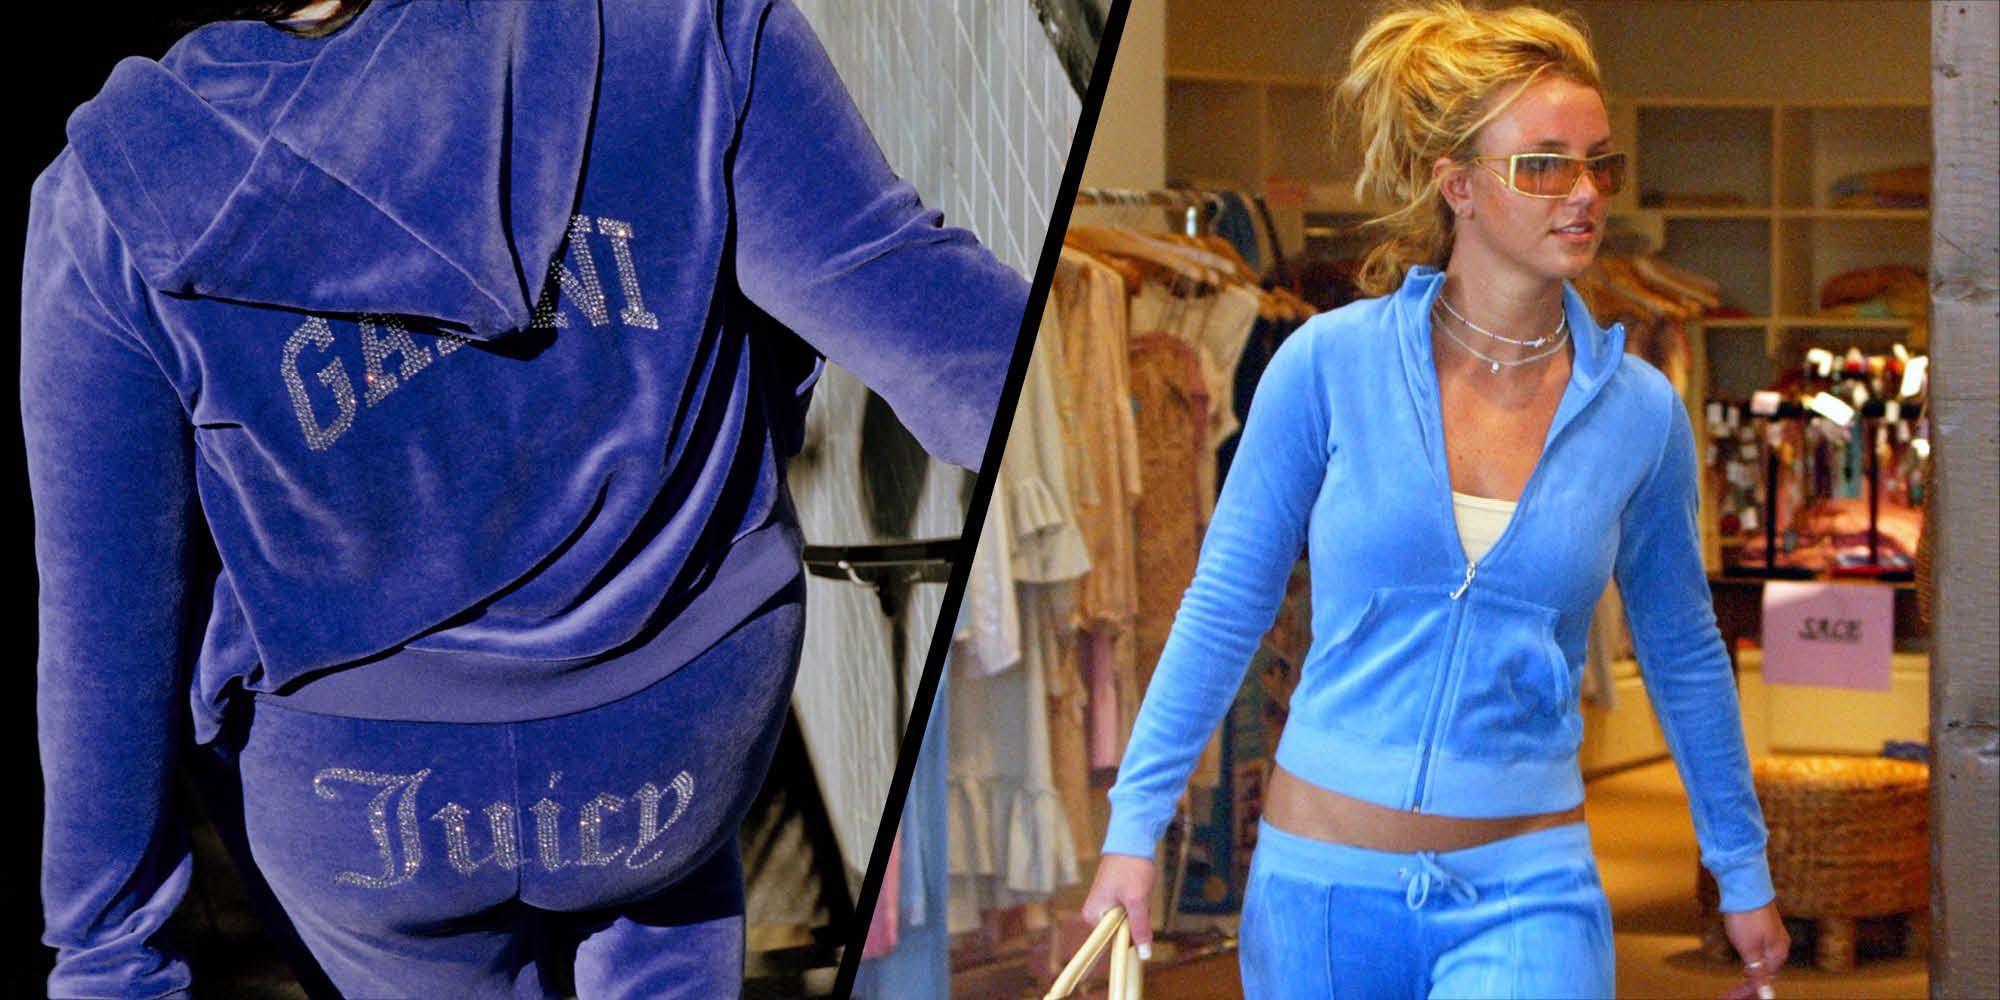 Paris Hilton explains why Juicy Couture tracksuits became her 'uniform